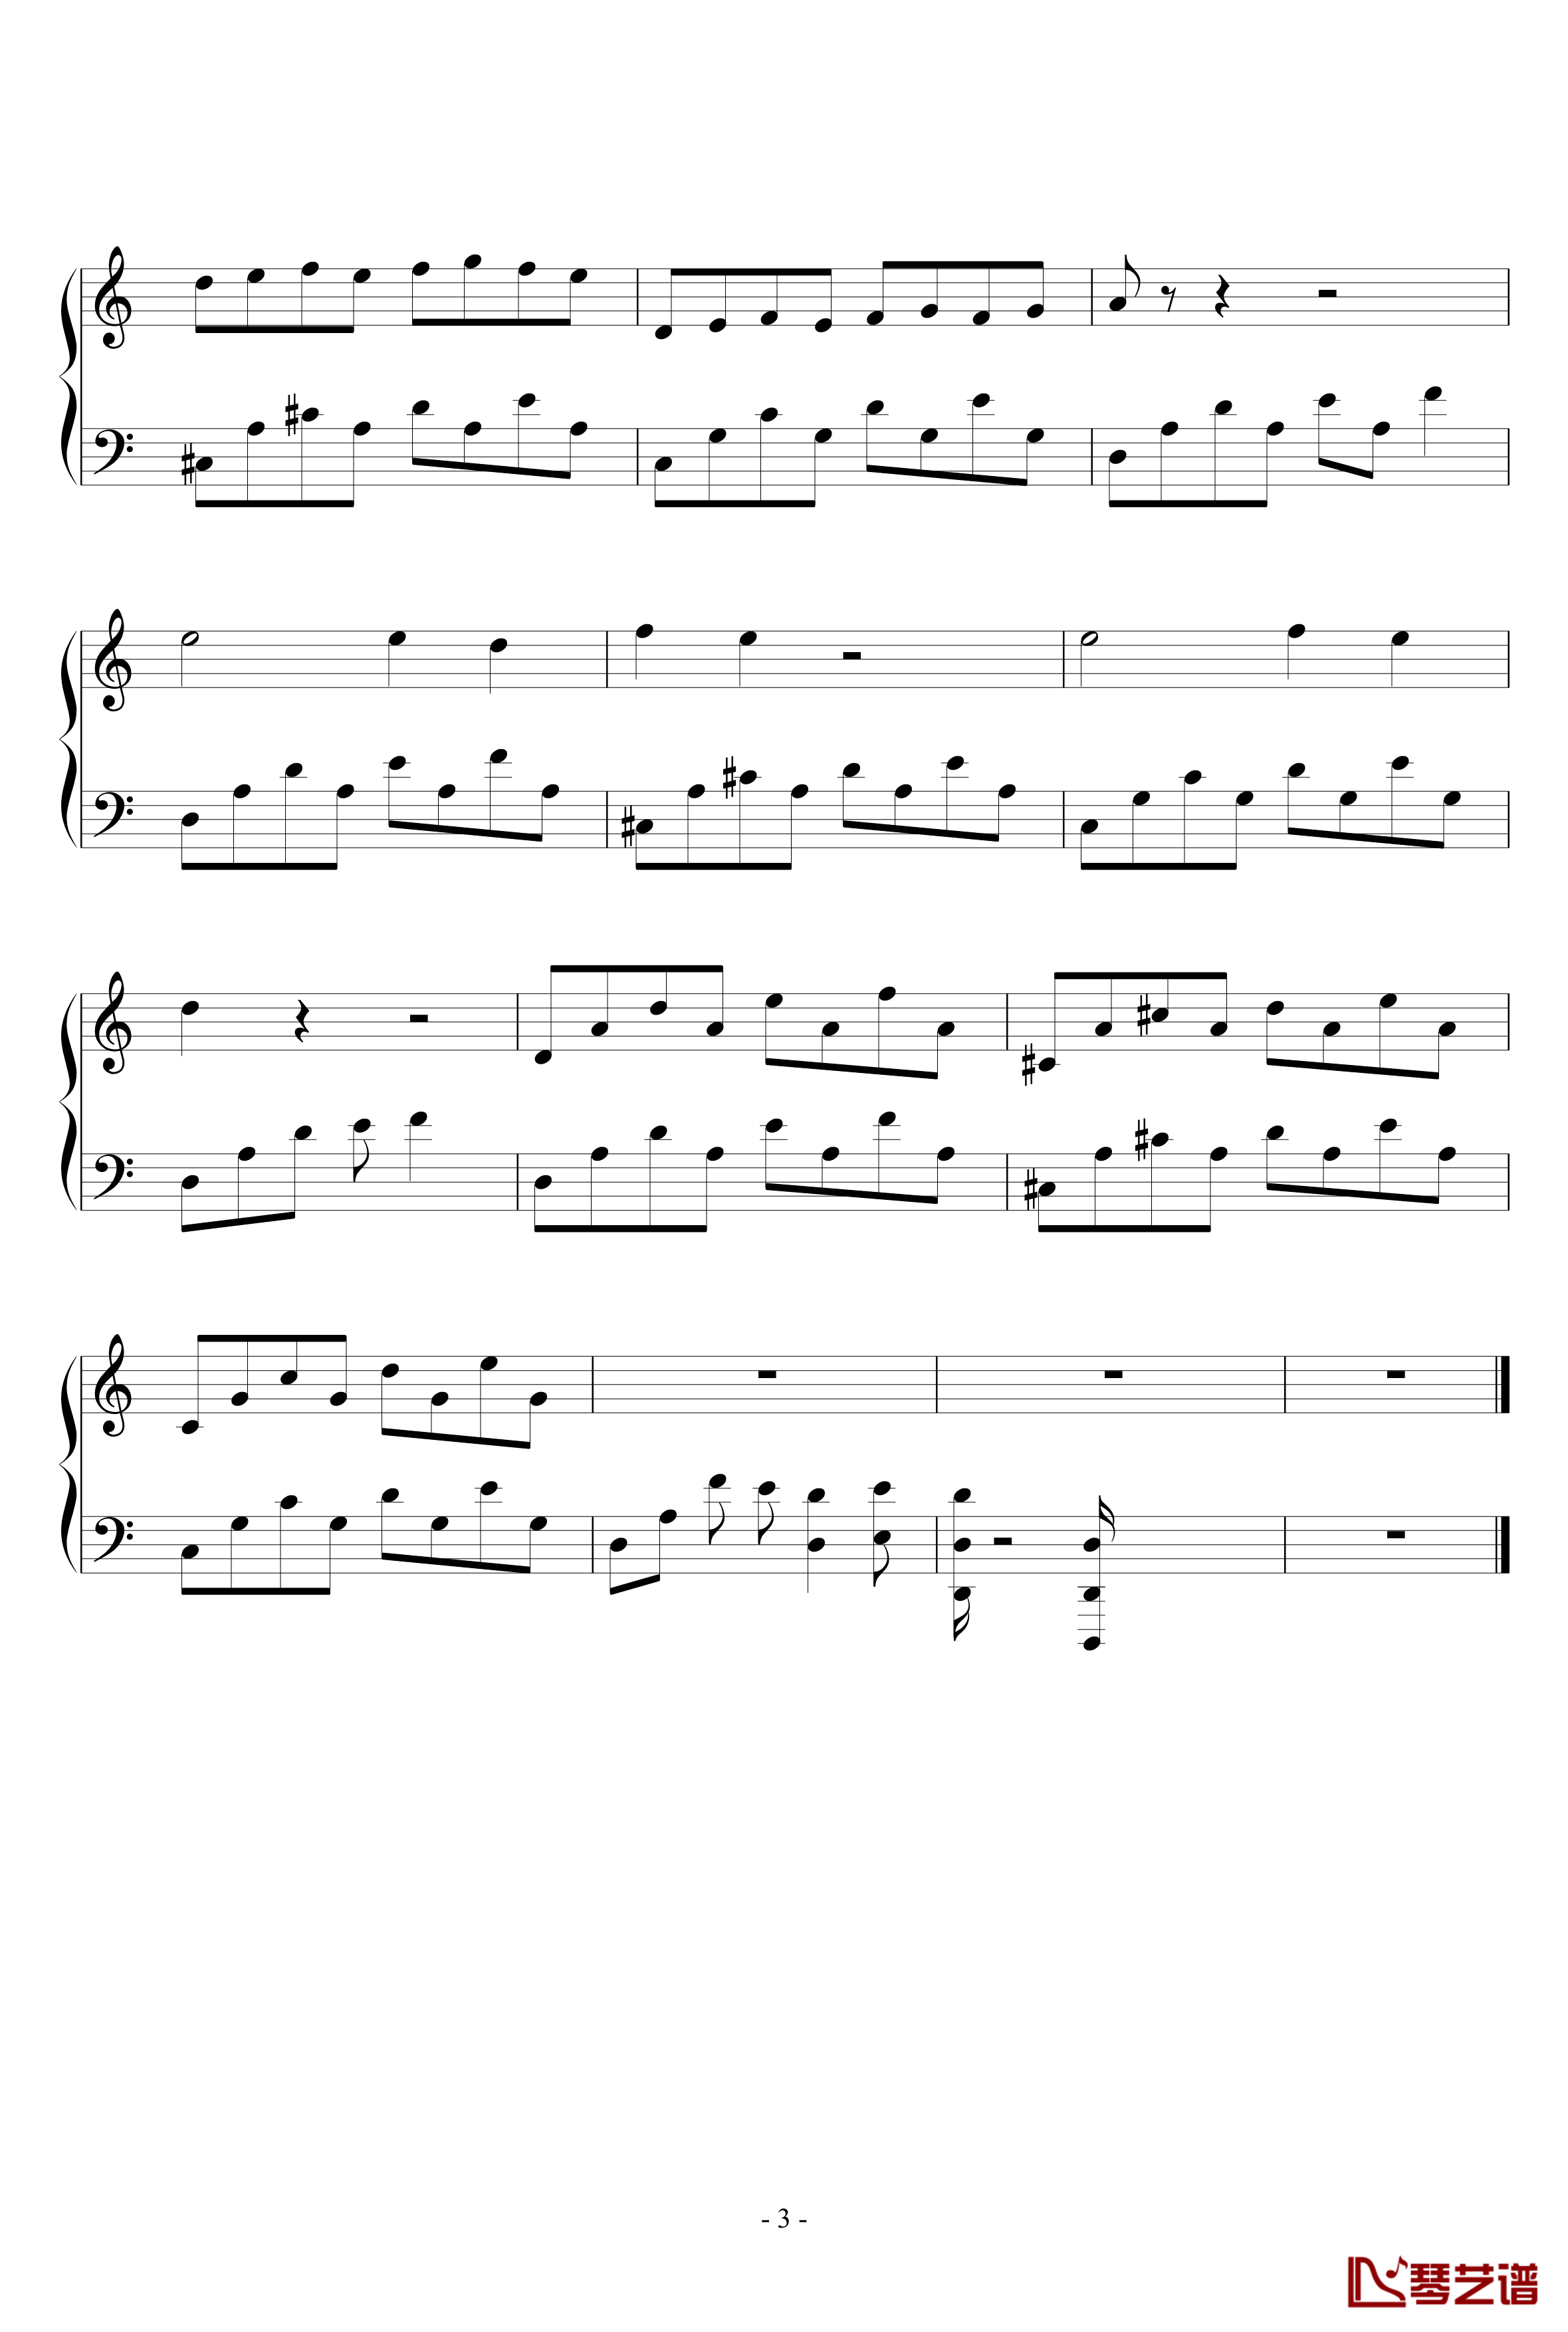 简调的华丽钢琴谱-第八章-王科健3